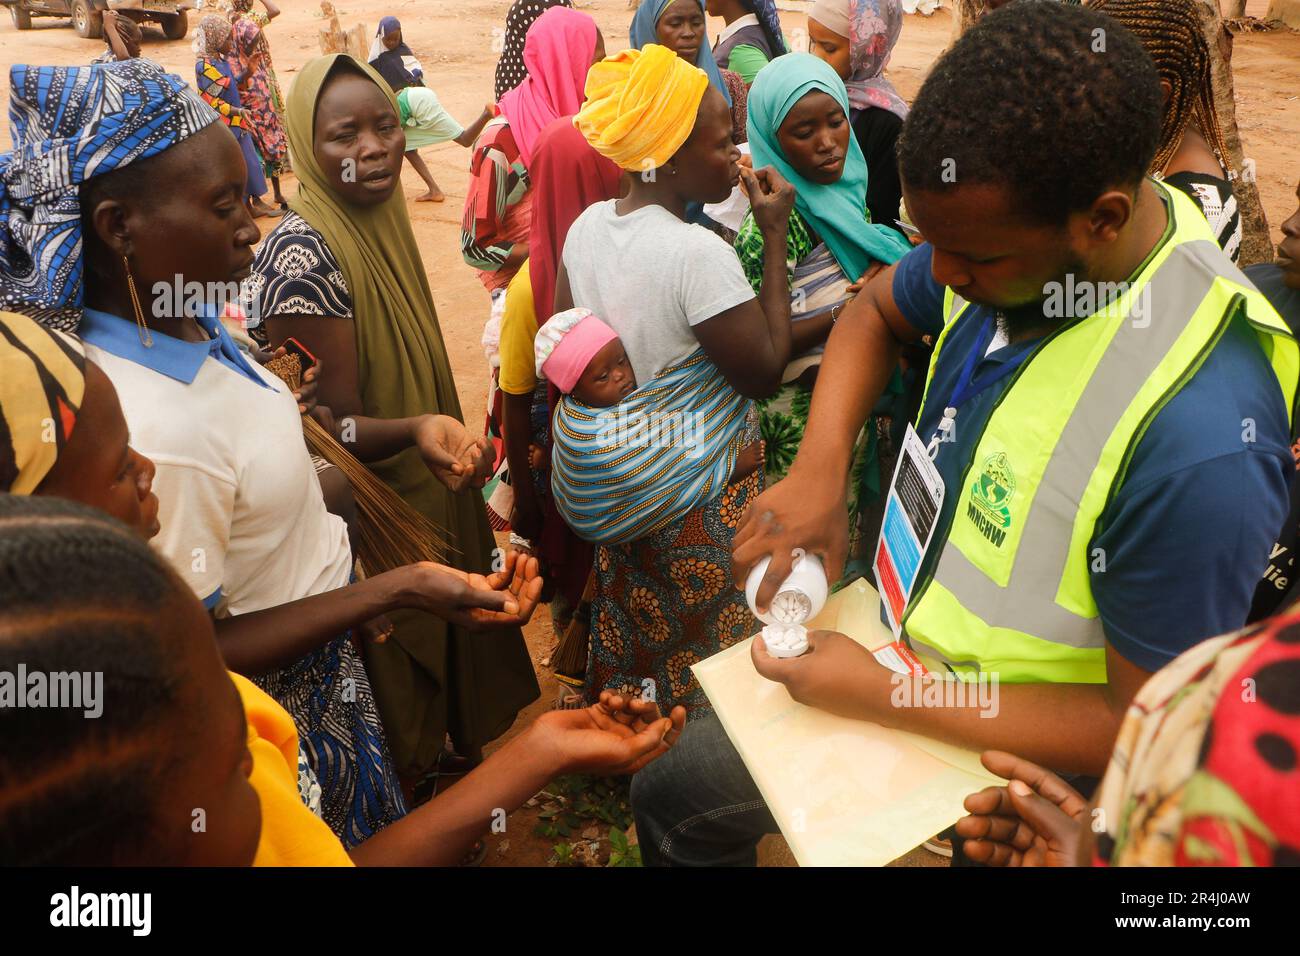 Le persone sono viste ricevere assistenza medica gratuita in un rifugio di fortuna al campo IDP Durumi di Abuja. Il campo IDP di Durumi ospita oltre 2.000 sfollati interni. Le persone sfollate sono riparate nei campi a causa dell'insurrezione nelle province nordorientali della Nigeria, che continua ad aumentare ogni giorno. Nigeria. Foto Stock